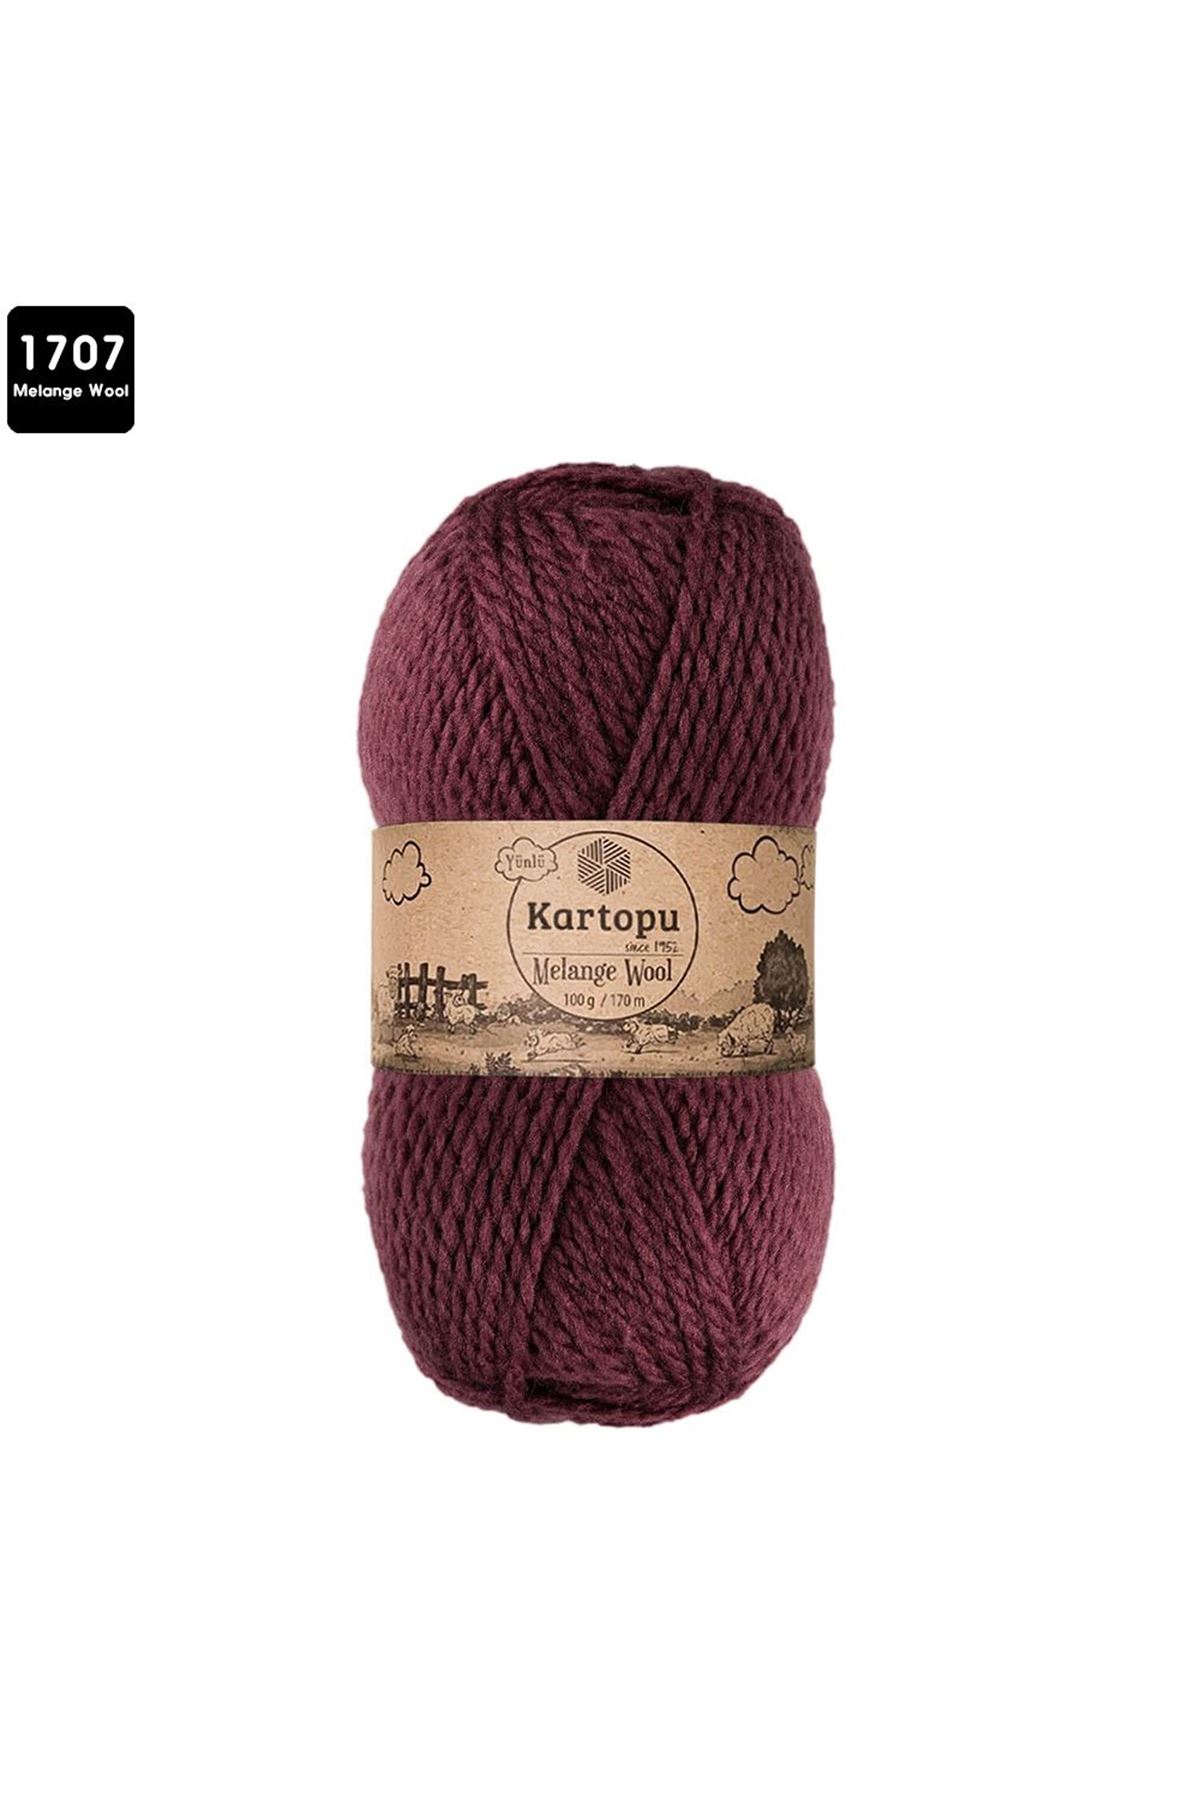 Kartopu Melange Wool Renk No:1707